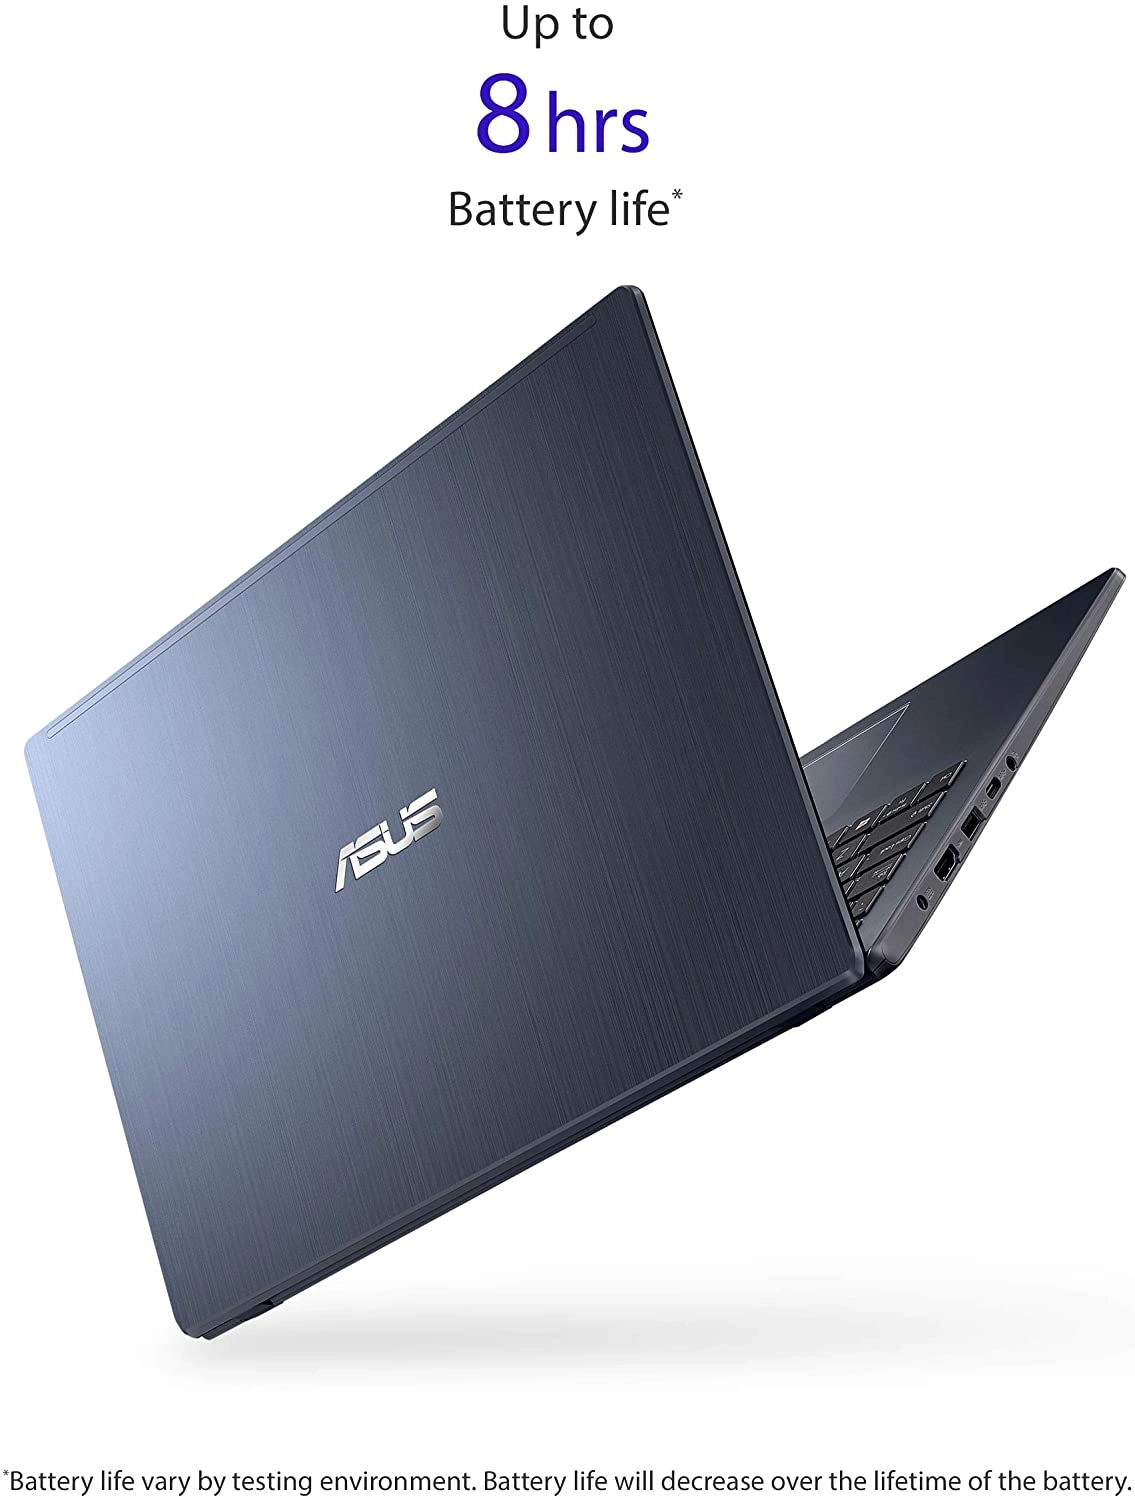 Asus ASUS Laptop laptop image